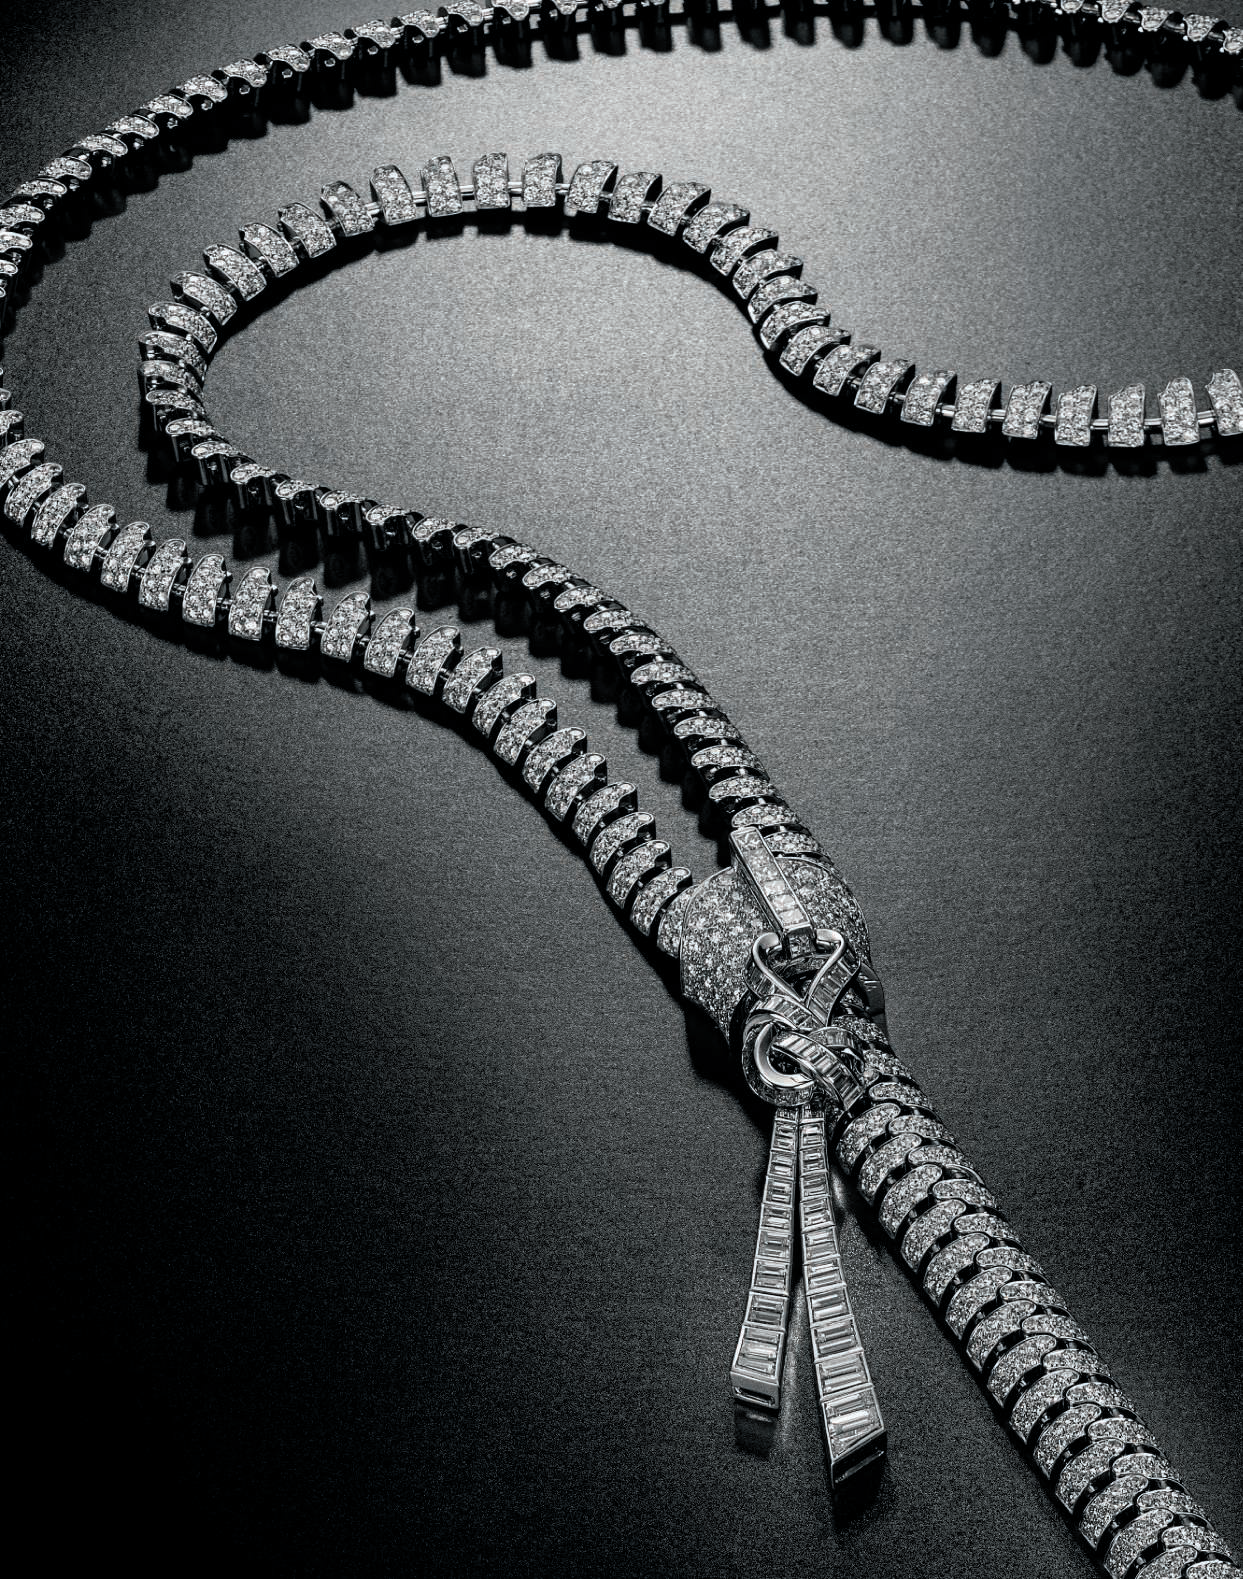 How Van Cleef & Arpels's Legendary Zip Necklace is Made